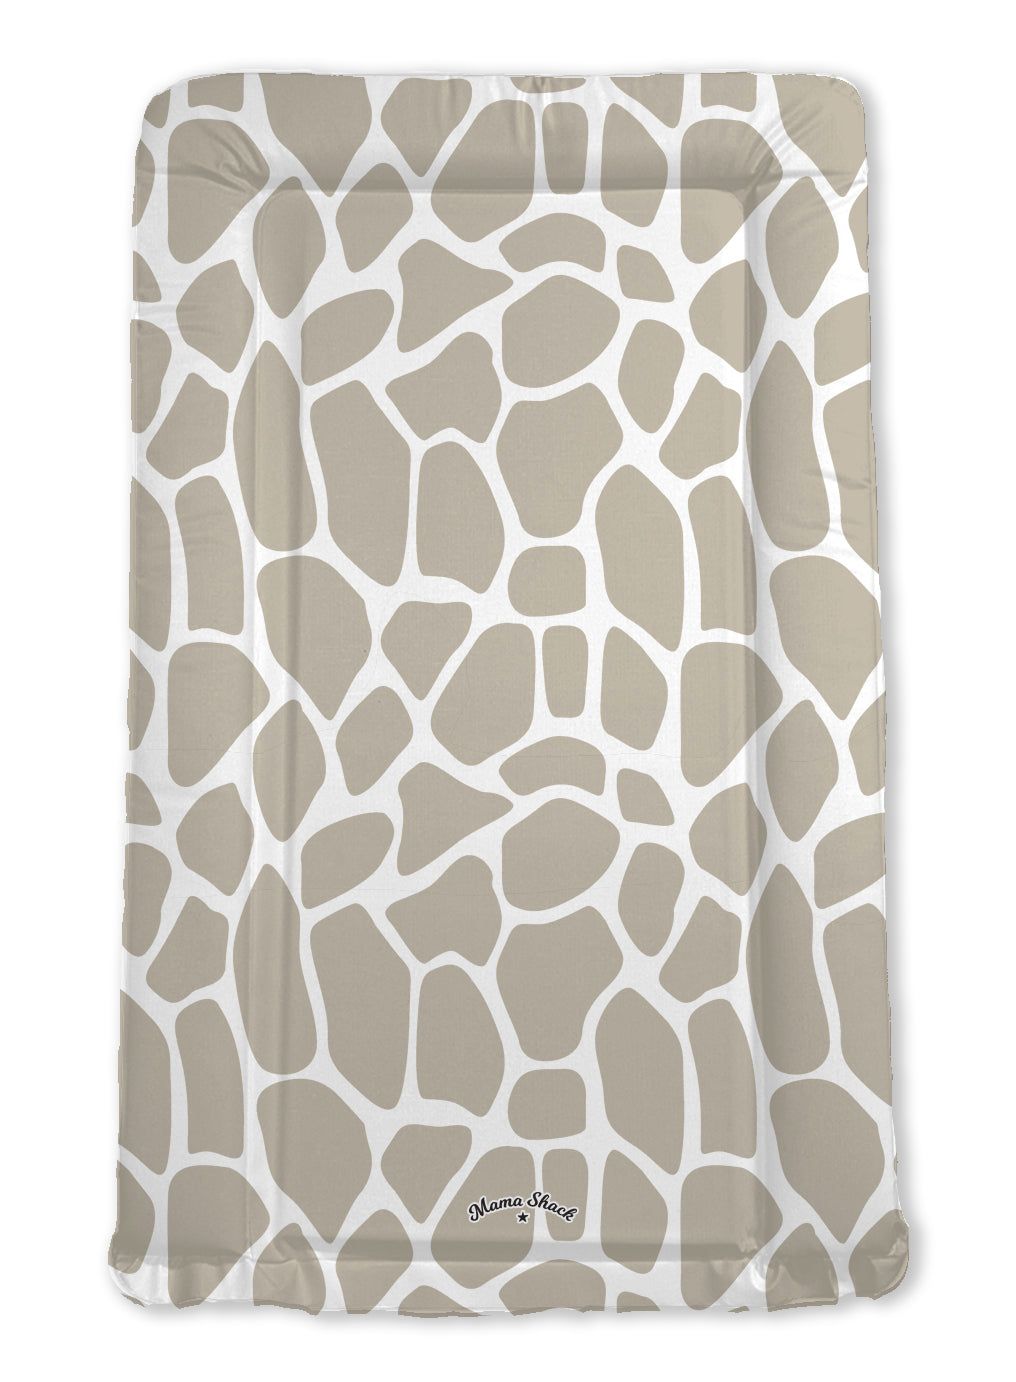 Giraffe Print Standard Changing Mat